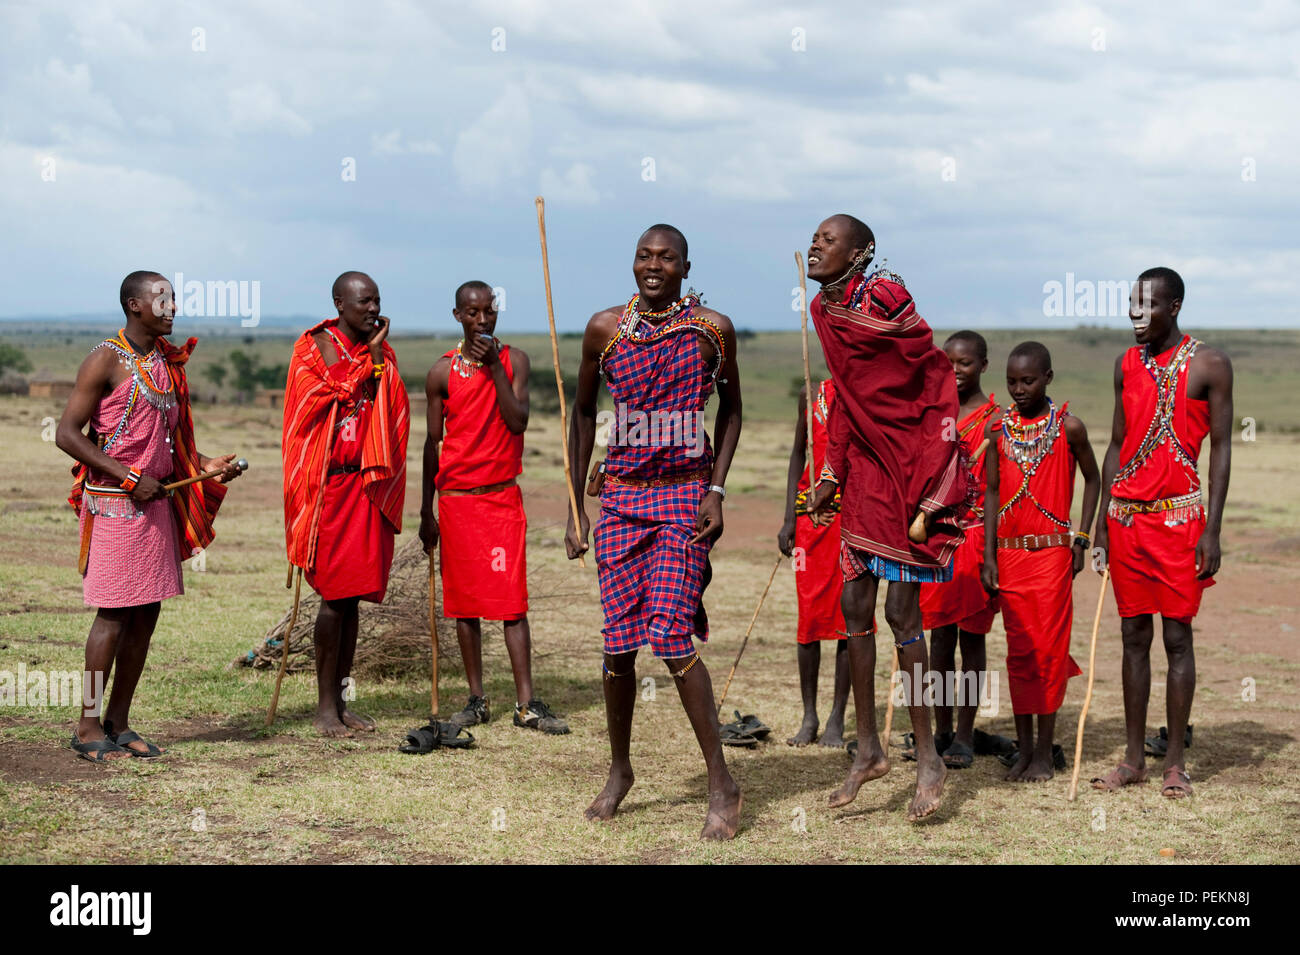 Los guerreros masai bailando Foto de stock